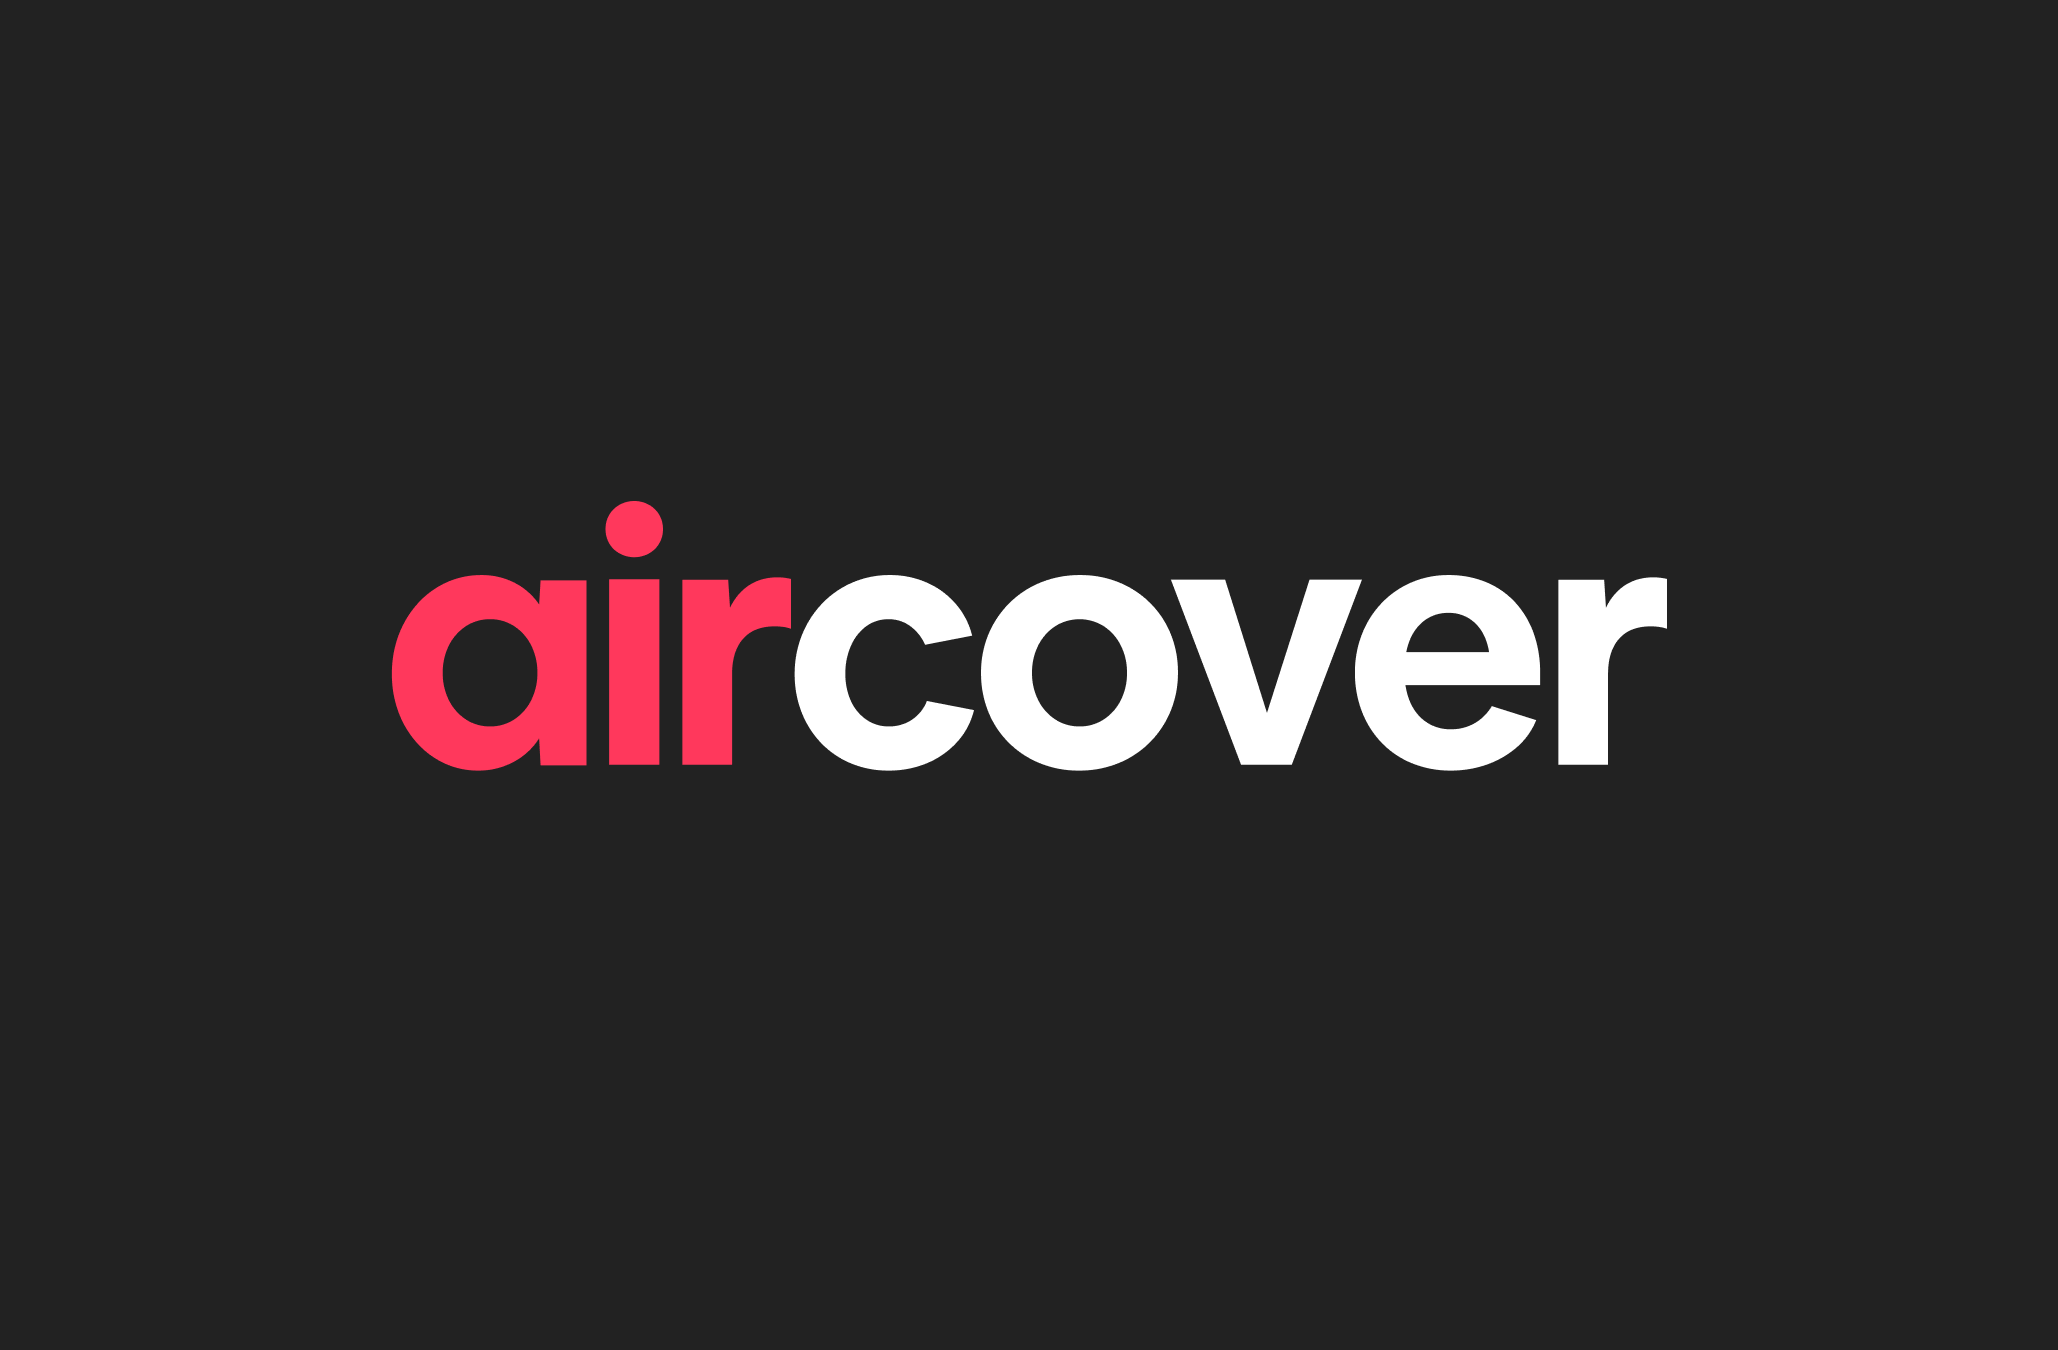 Das AirCover-Logo in roten und weißen Buchstaben vor einem schwarzen Hintergrund.